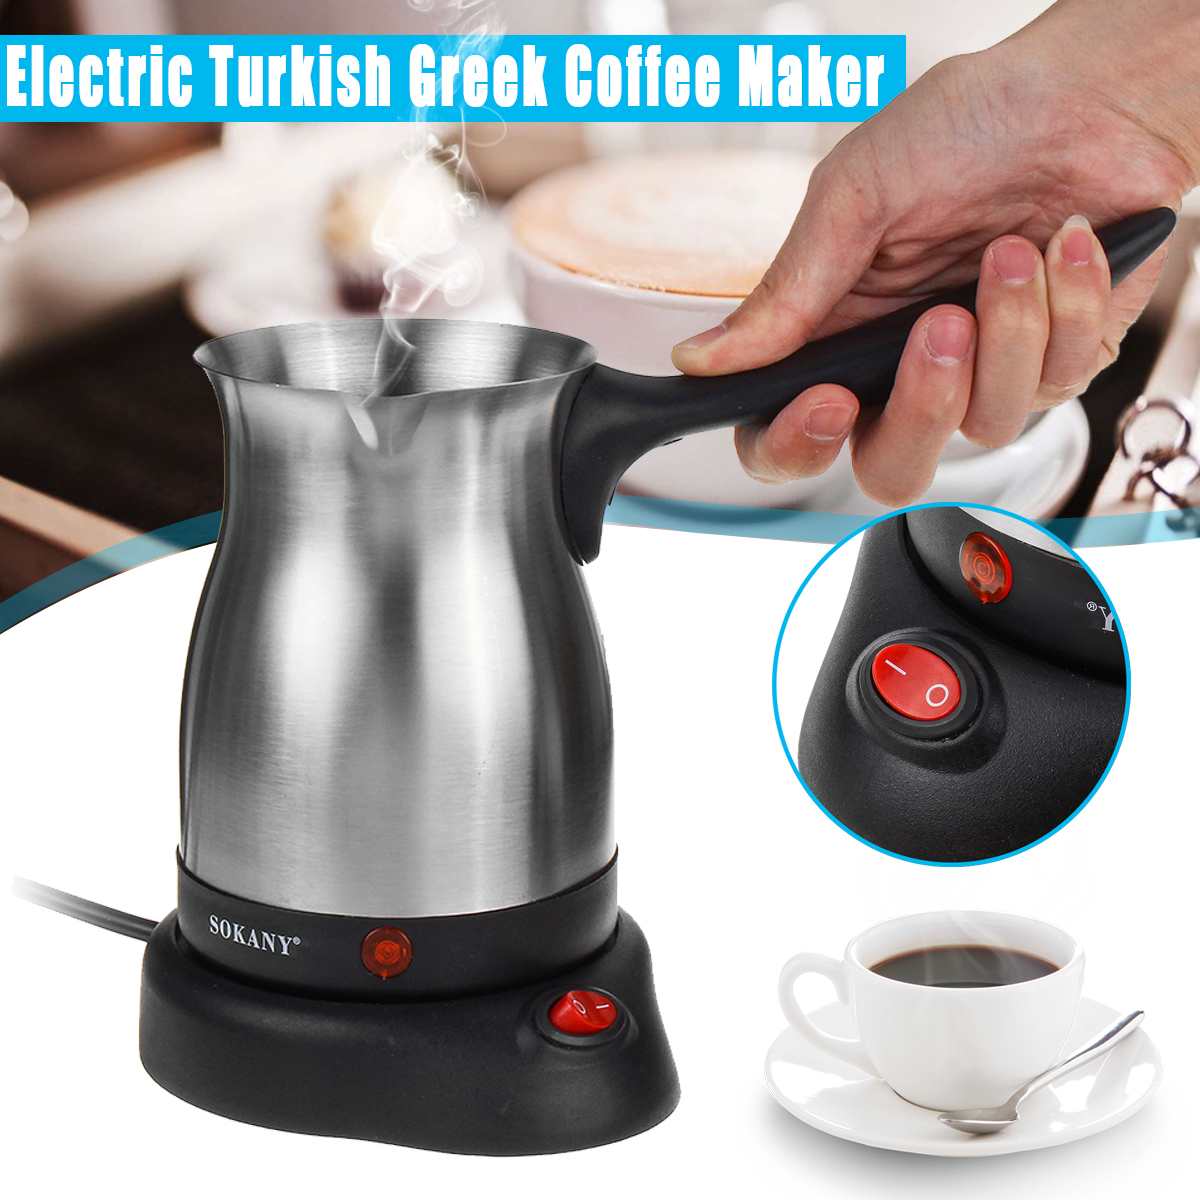 Elektrische Koffiezetapparaat Rvs Turkse Griekse Koffiemachine Espresso Moka Pot Home Office Koffie Pot Waterdicht IPX4